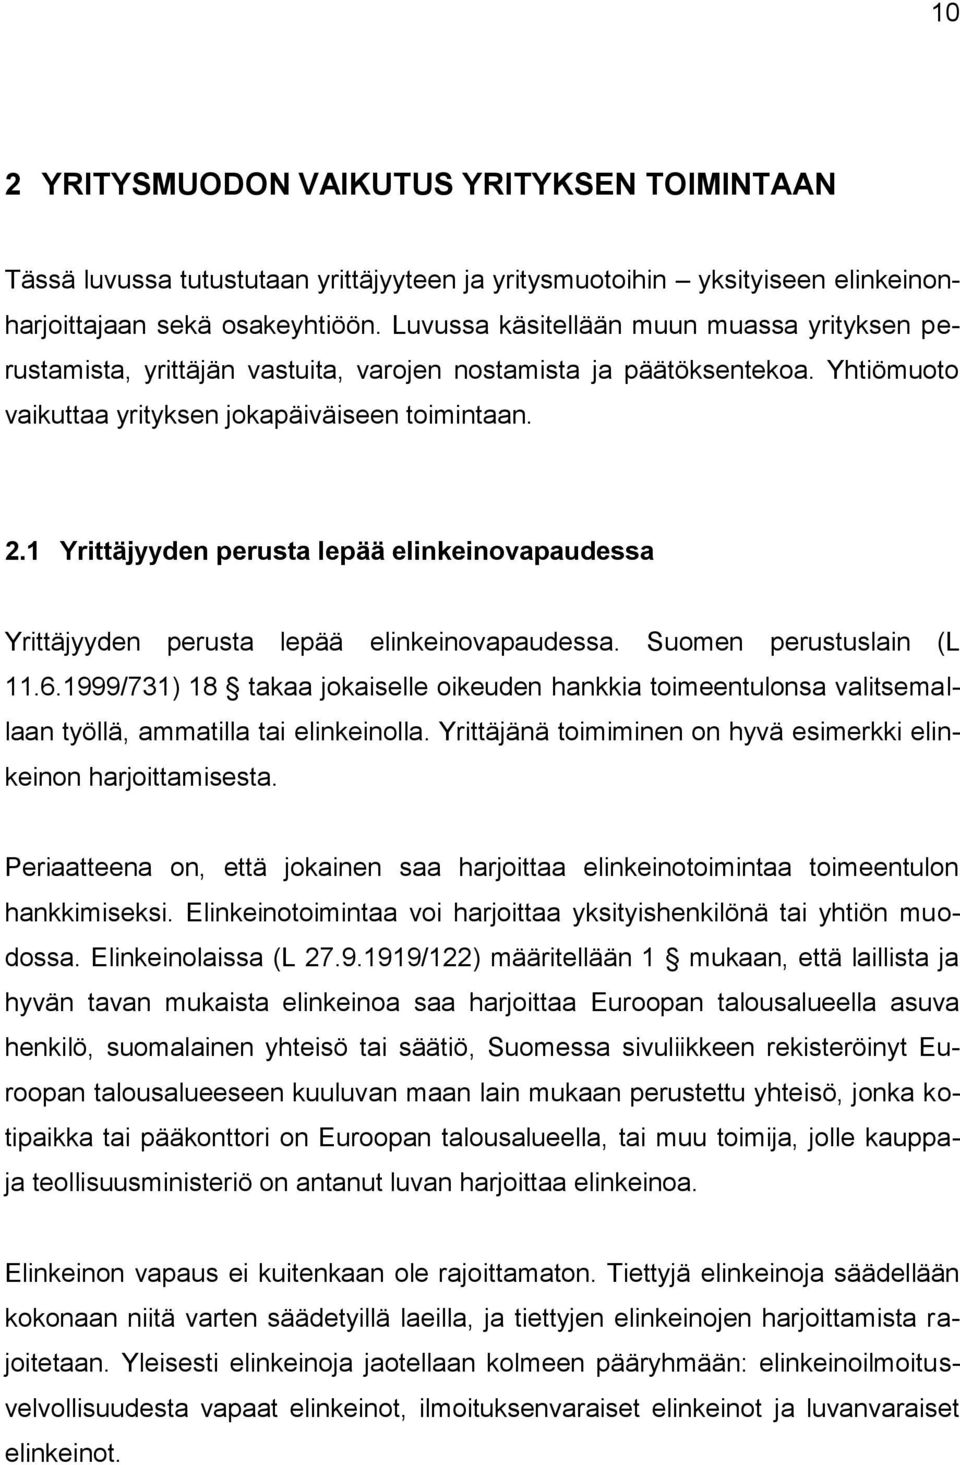 1 Yrittäjyyden perusta lepää elinkeinovapaudessa Yrittäjyyden perusta lepää elinkeinovapaudessa. Suomen perustuslain (L 11.6.